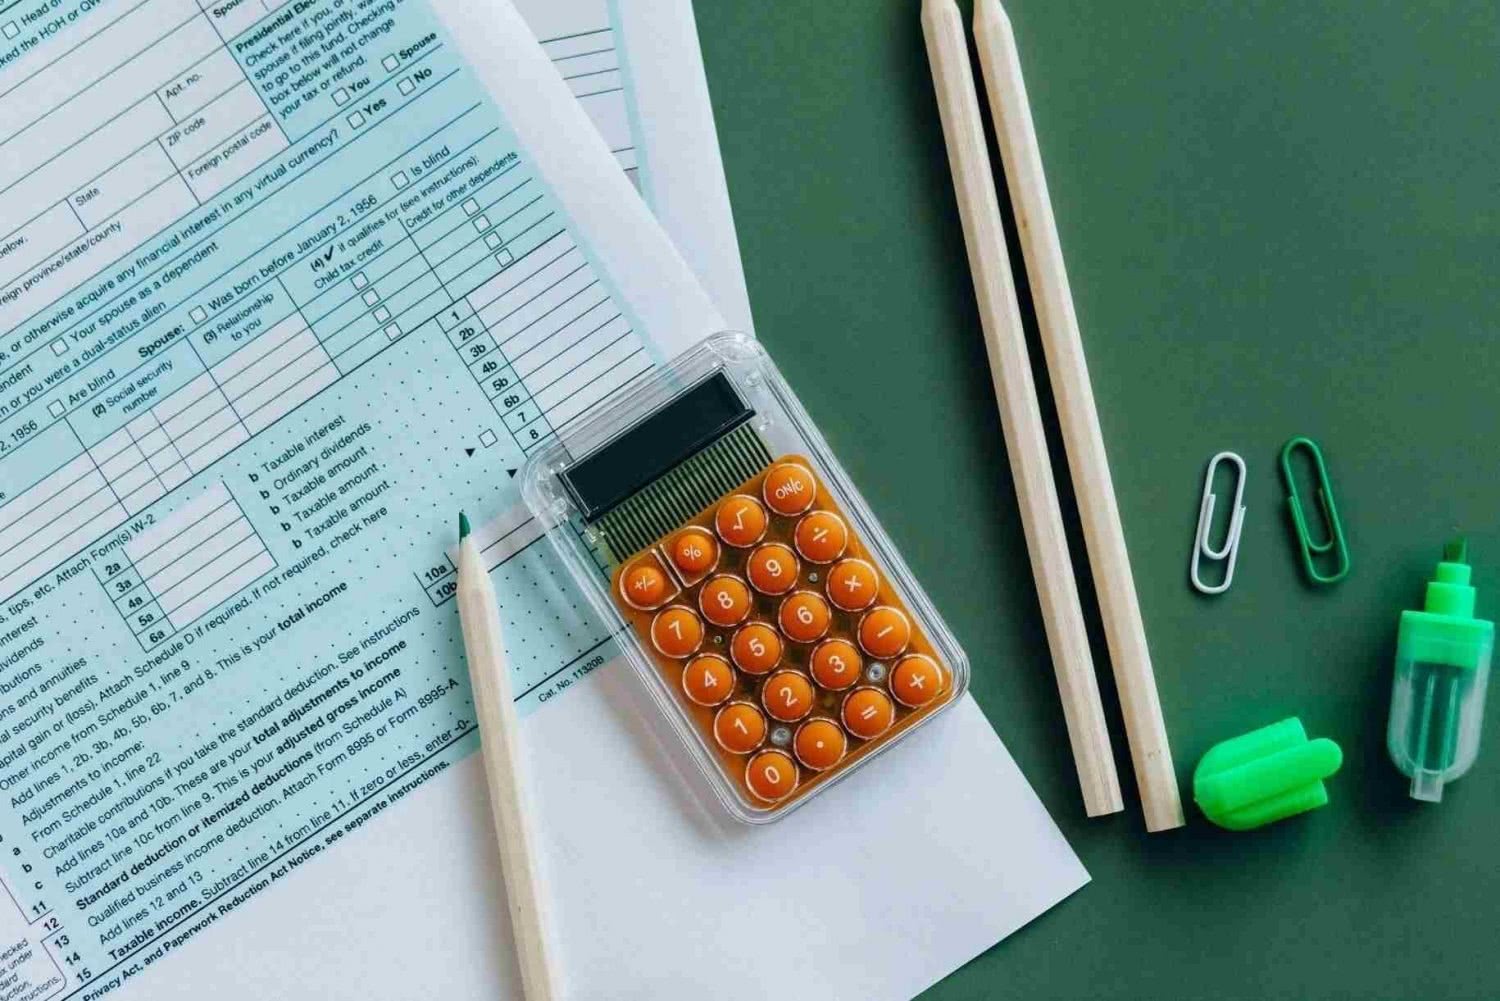 Steuererklärung, Taschenrechner, Marker und Stifte auf einem Schreibtisch